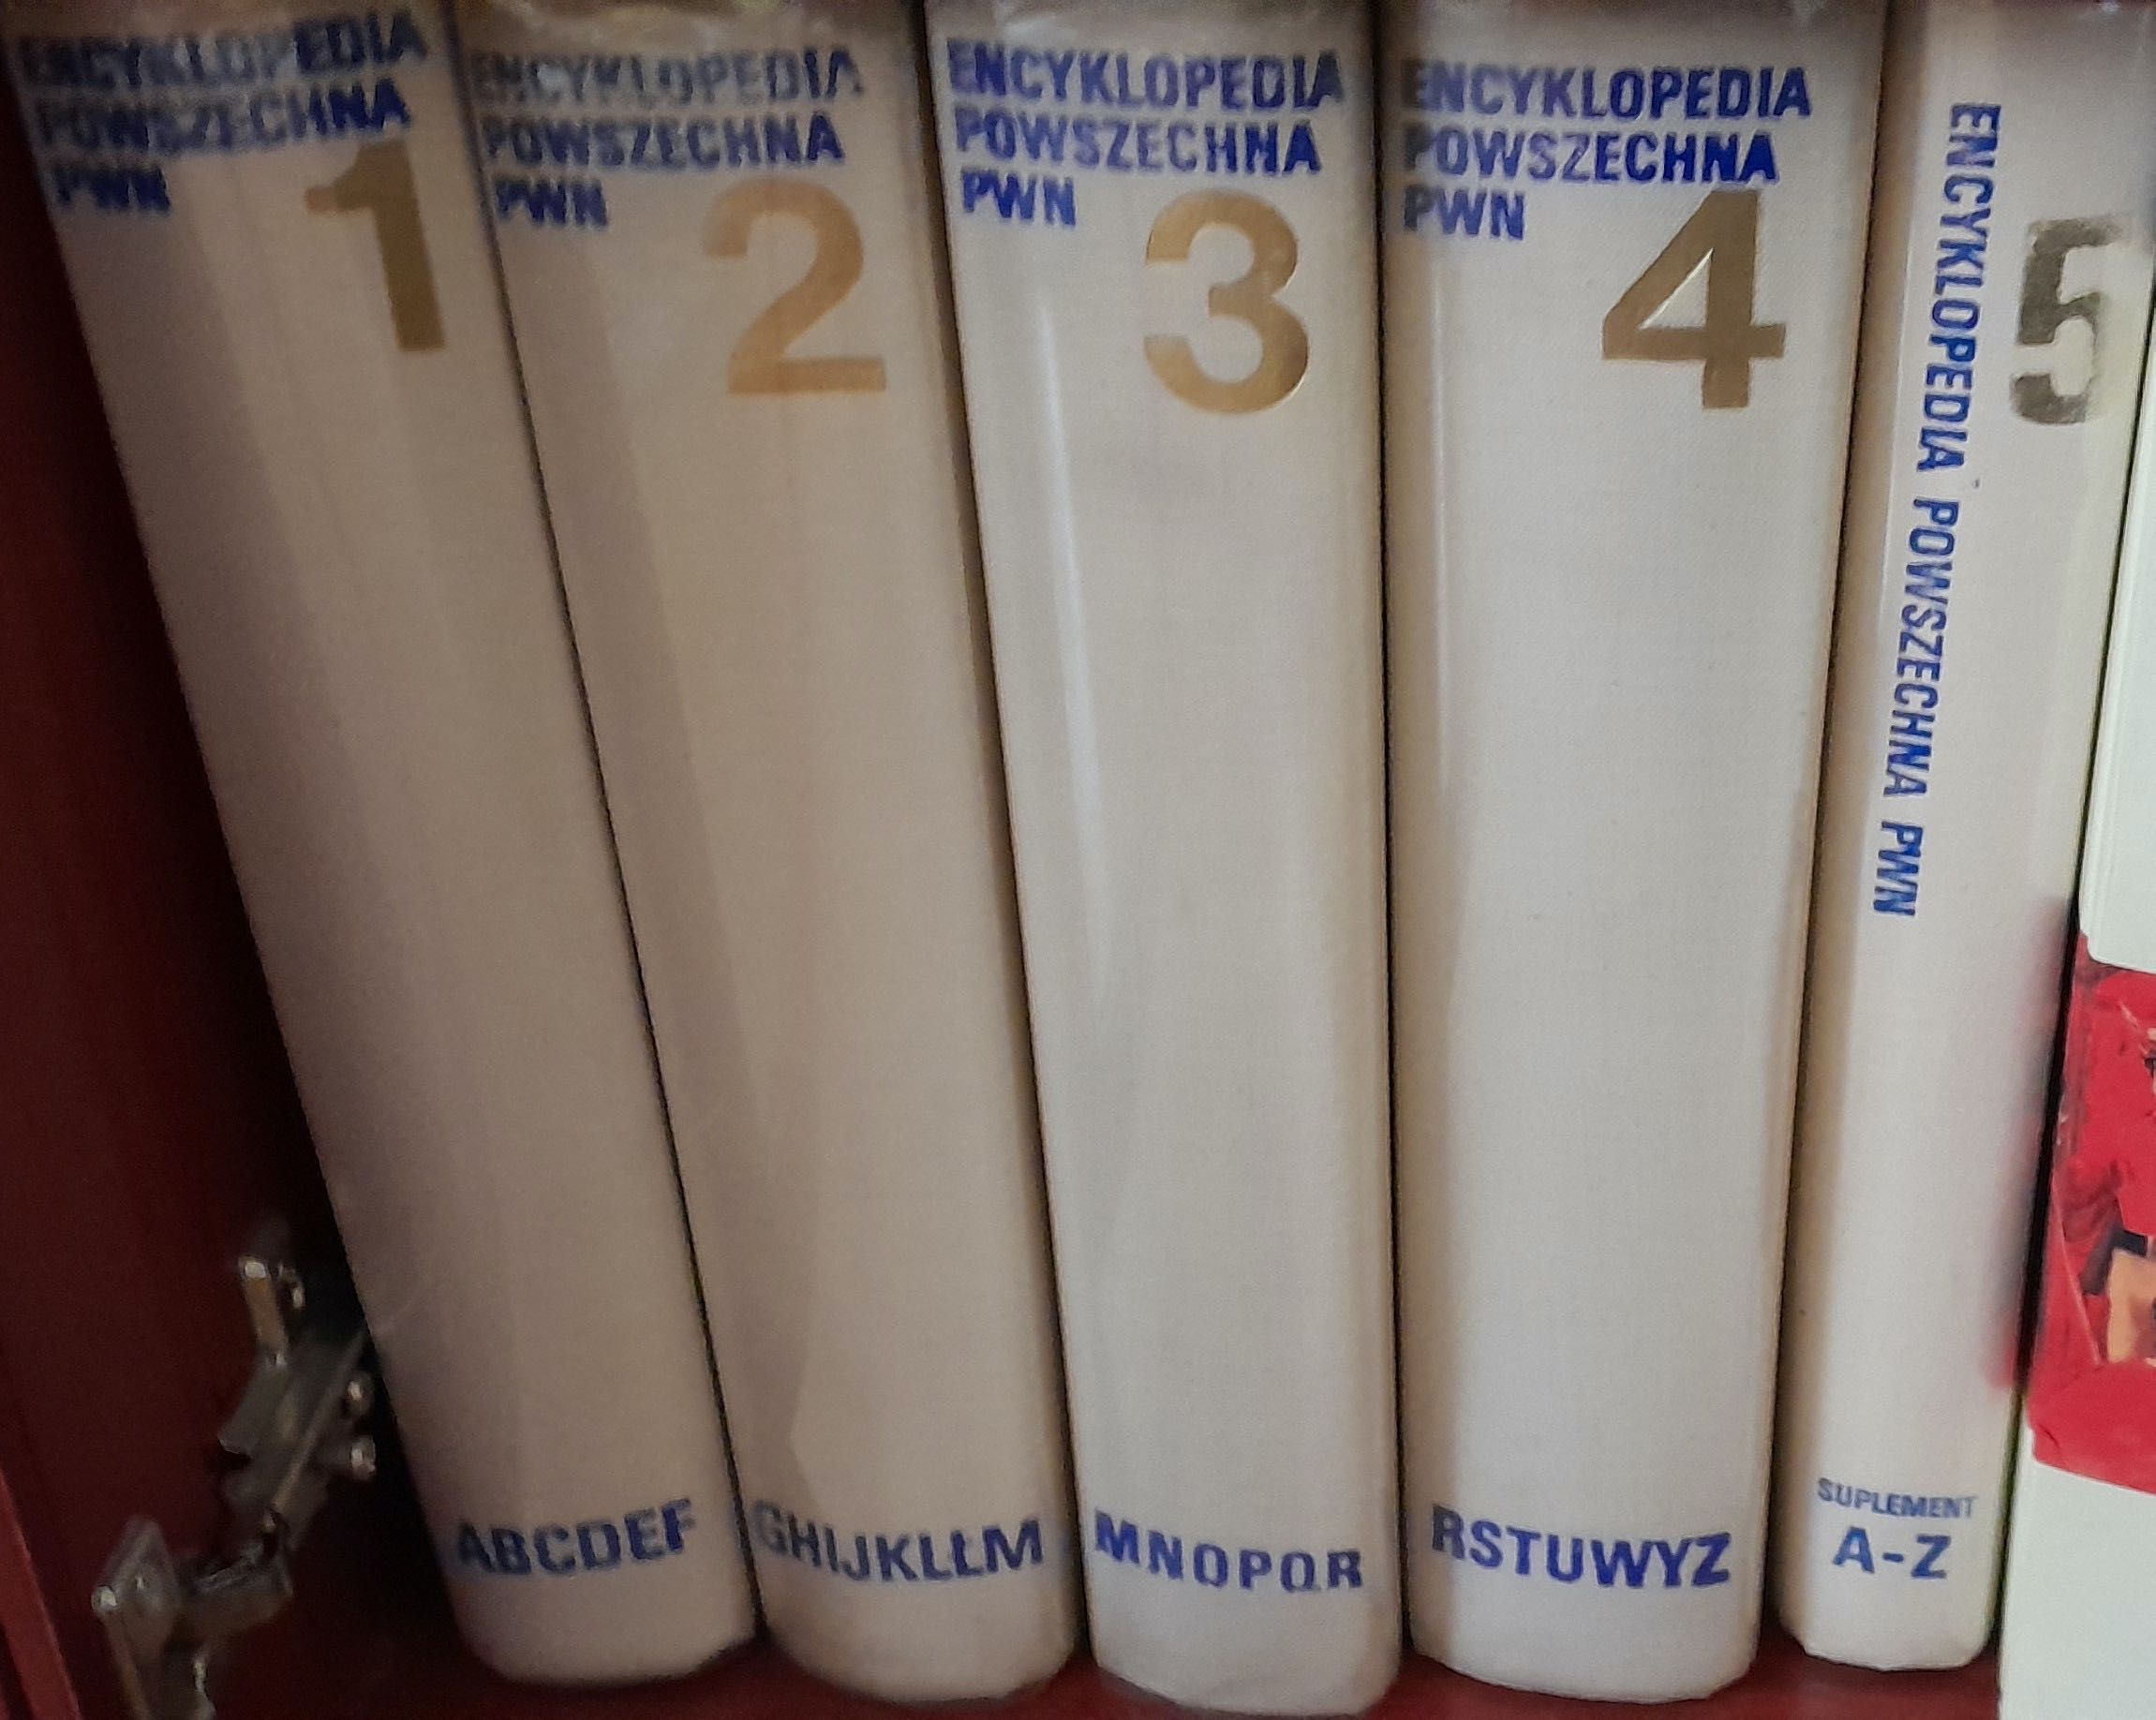 Encyklopedia Powszechna PRL